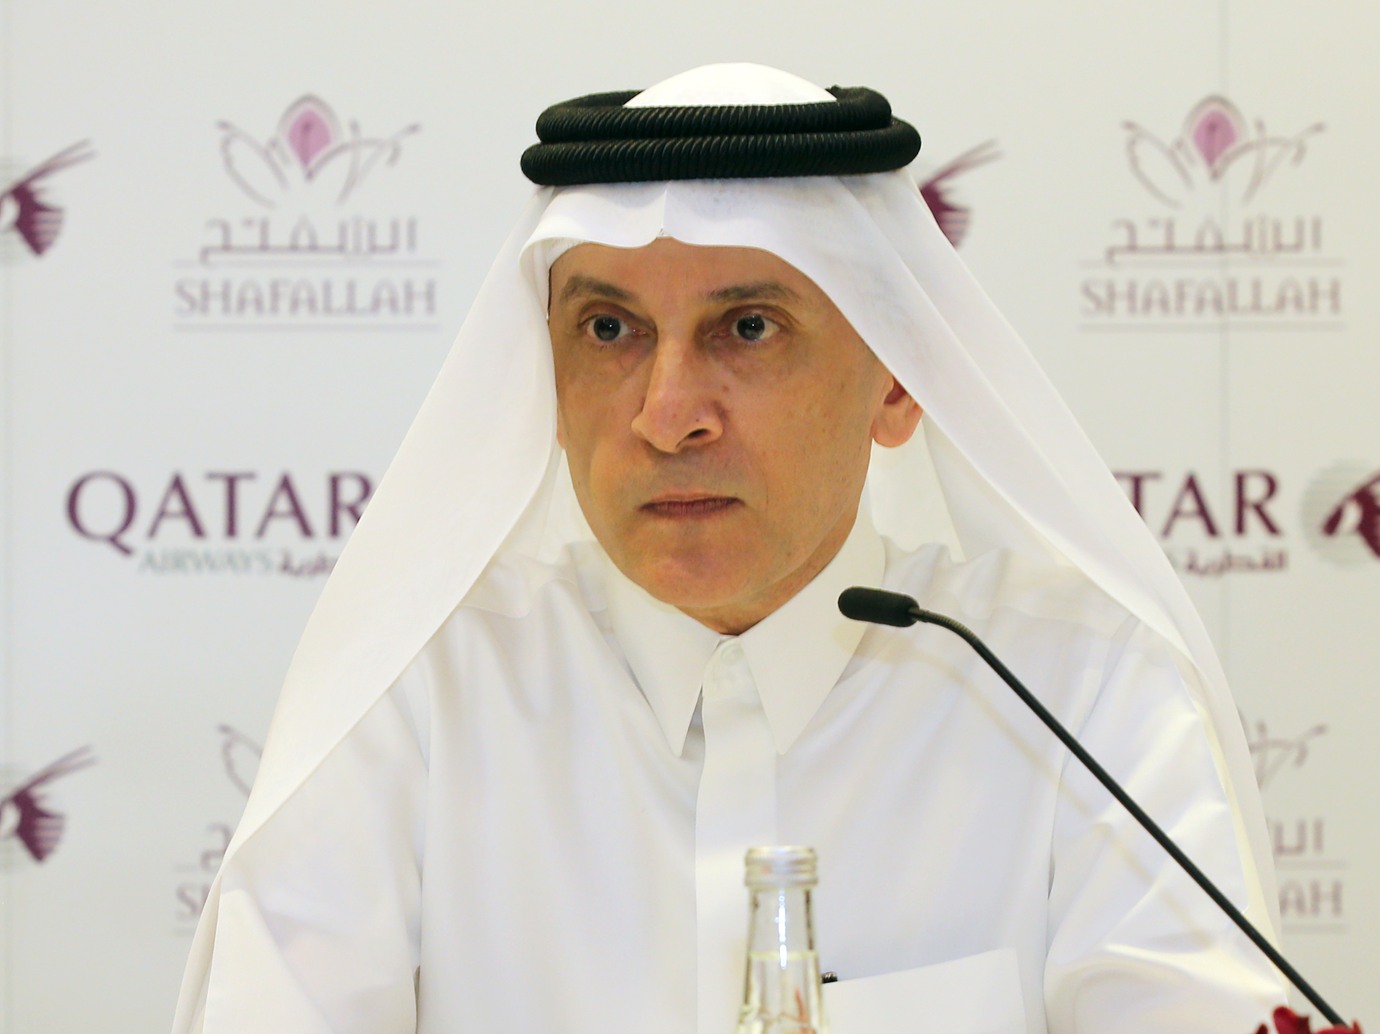 Qatar Airways adds 25 aircraft to its fleet in 2018